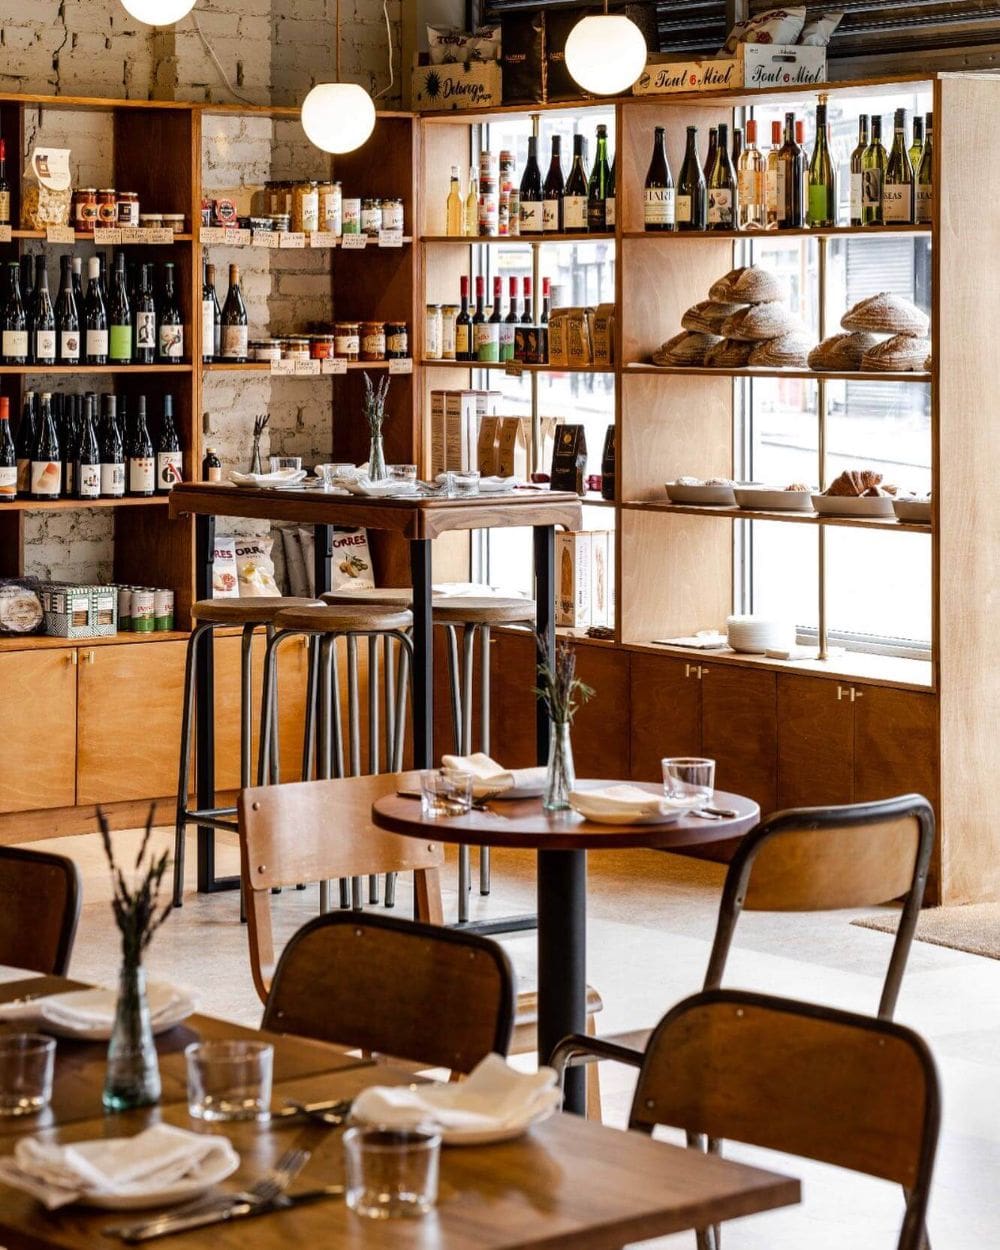 Mid-century interiors define Pasero restaurant in Tottenham